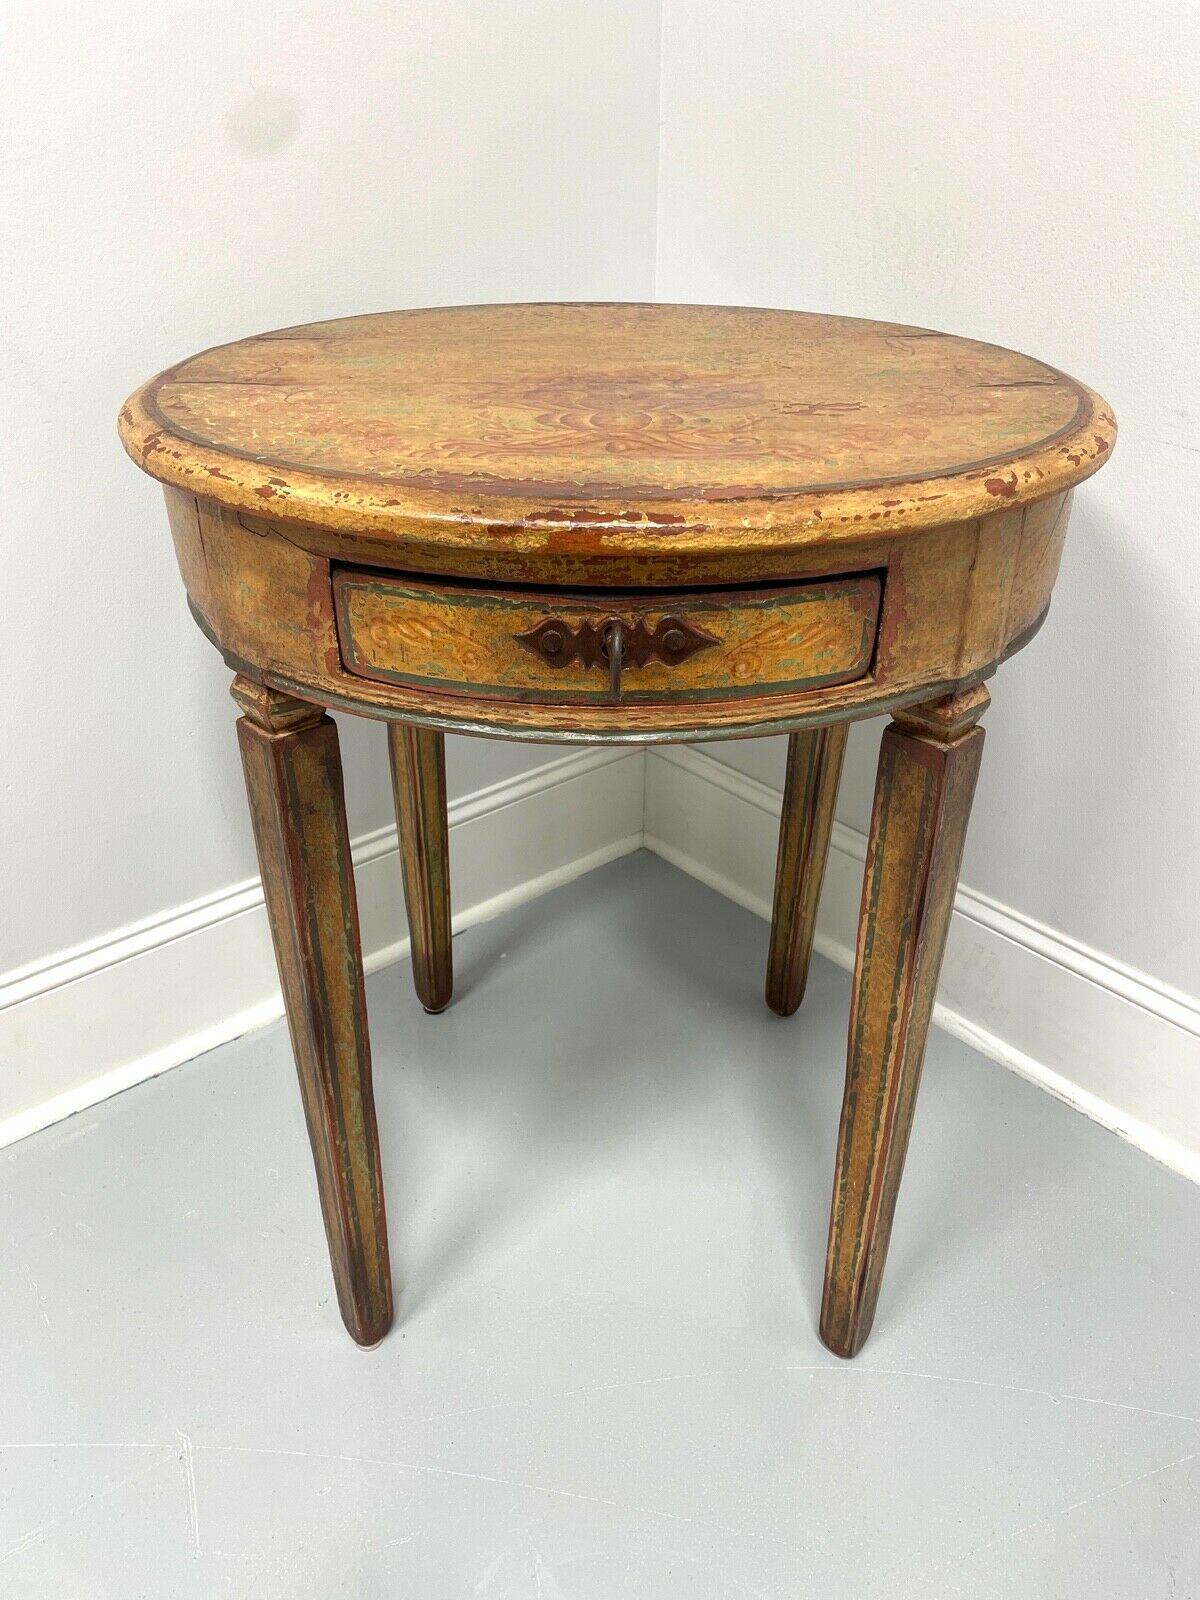 Cette table d'appoint ronde du XVIIIe siècle a été peinte et repeinte au fil des ans. Les multiples couches de peinture transparaissent à travers l'usure et semblent avoir été préservées par une couche de vernis. Bois massif avec quincaillerie en